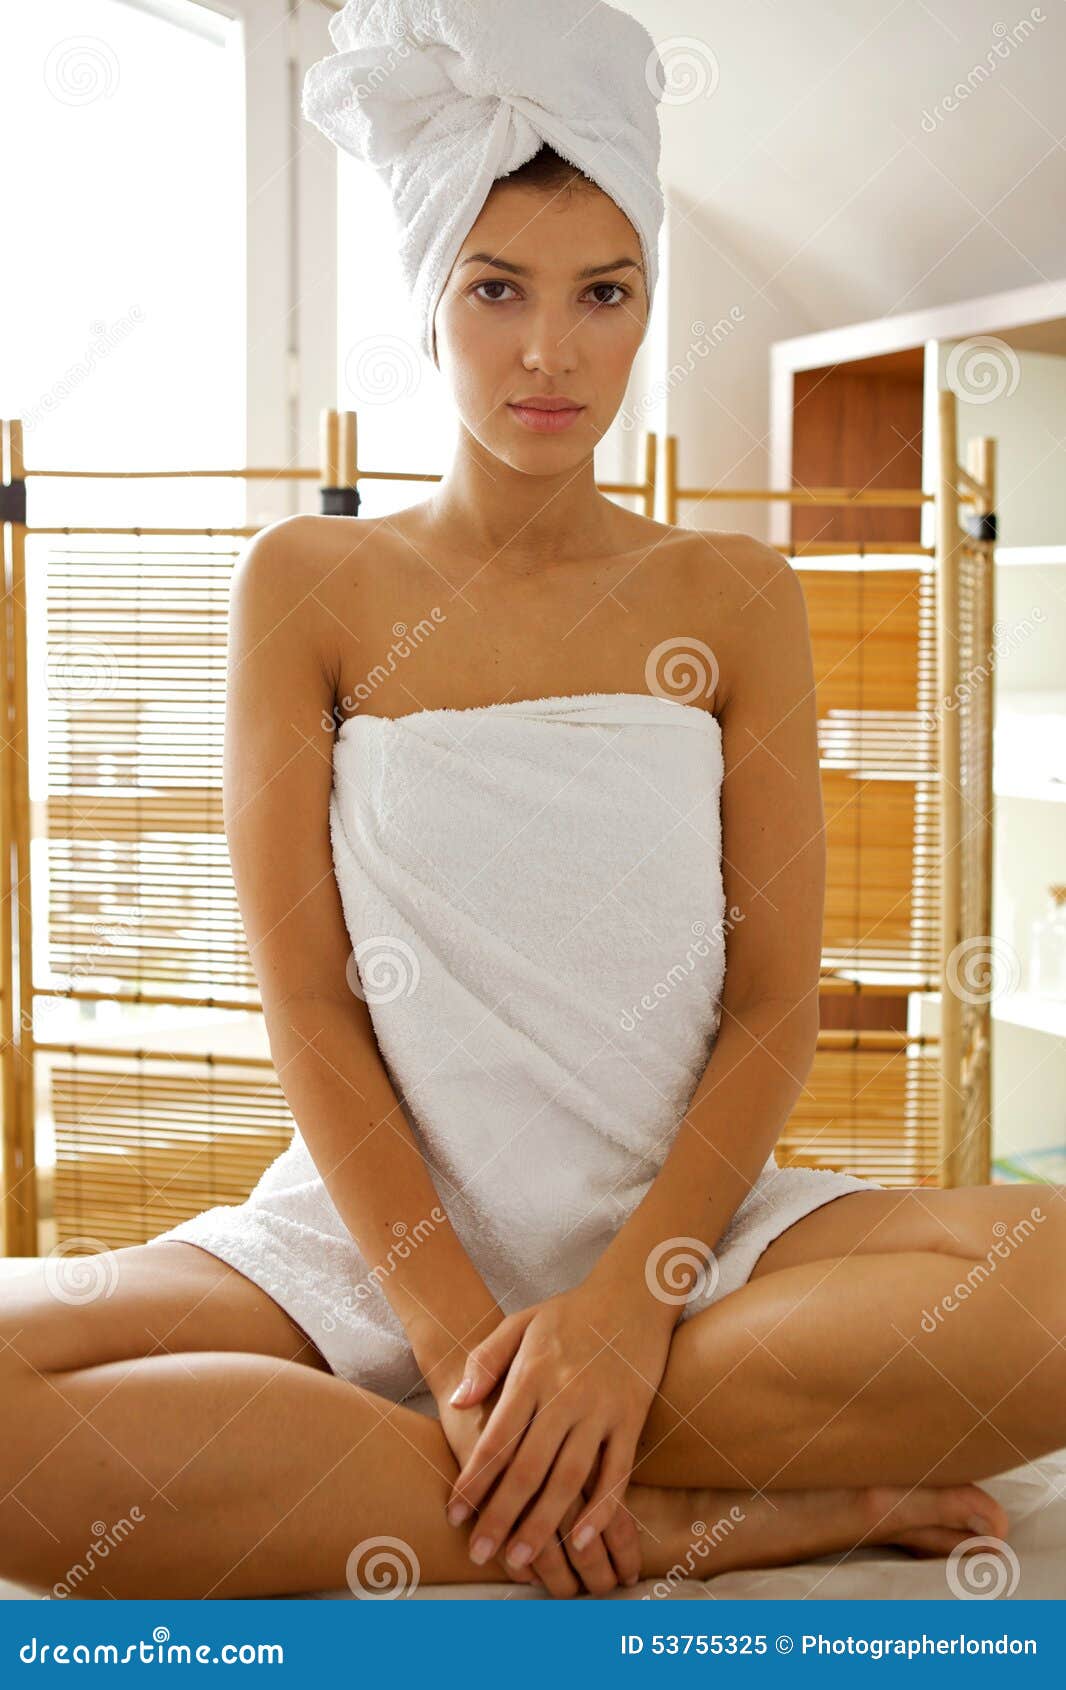 Упало полотенце перед. Женщины завёрнутые в полотенце. Девушка завернутая в полотенце. Азиатская девушка в полотенце. Девушка обернутая в полотенце.